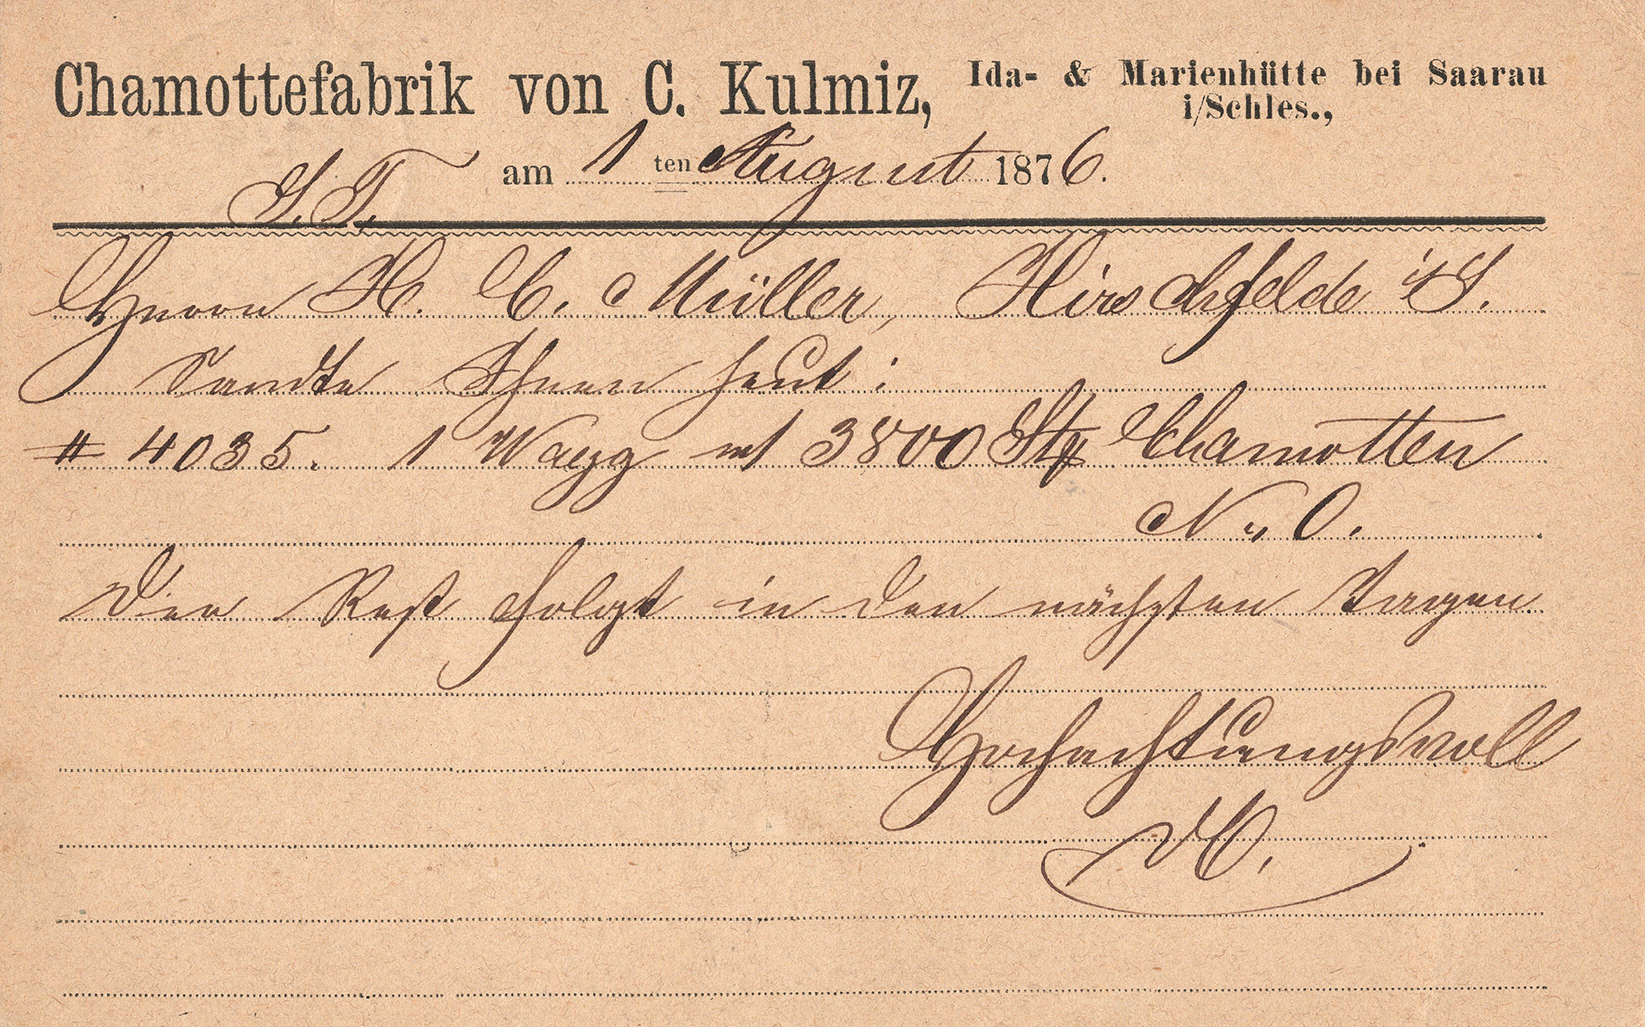 Kartka korespondencyjna Chamottefabrik von C. Kulmiz 1876 (2)